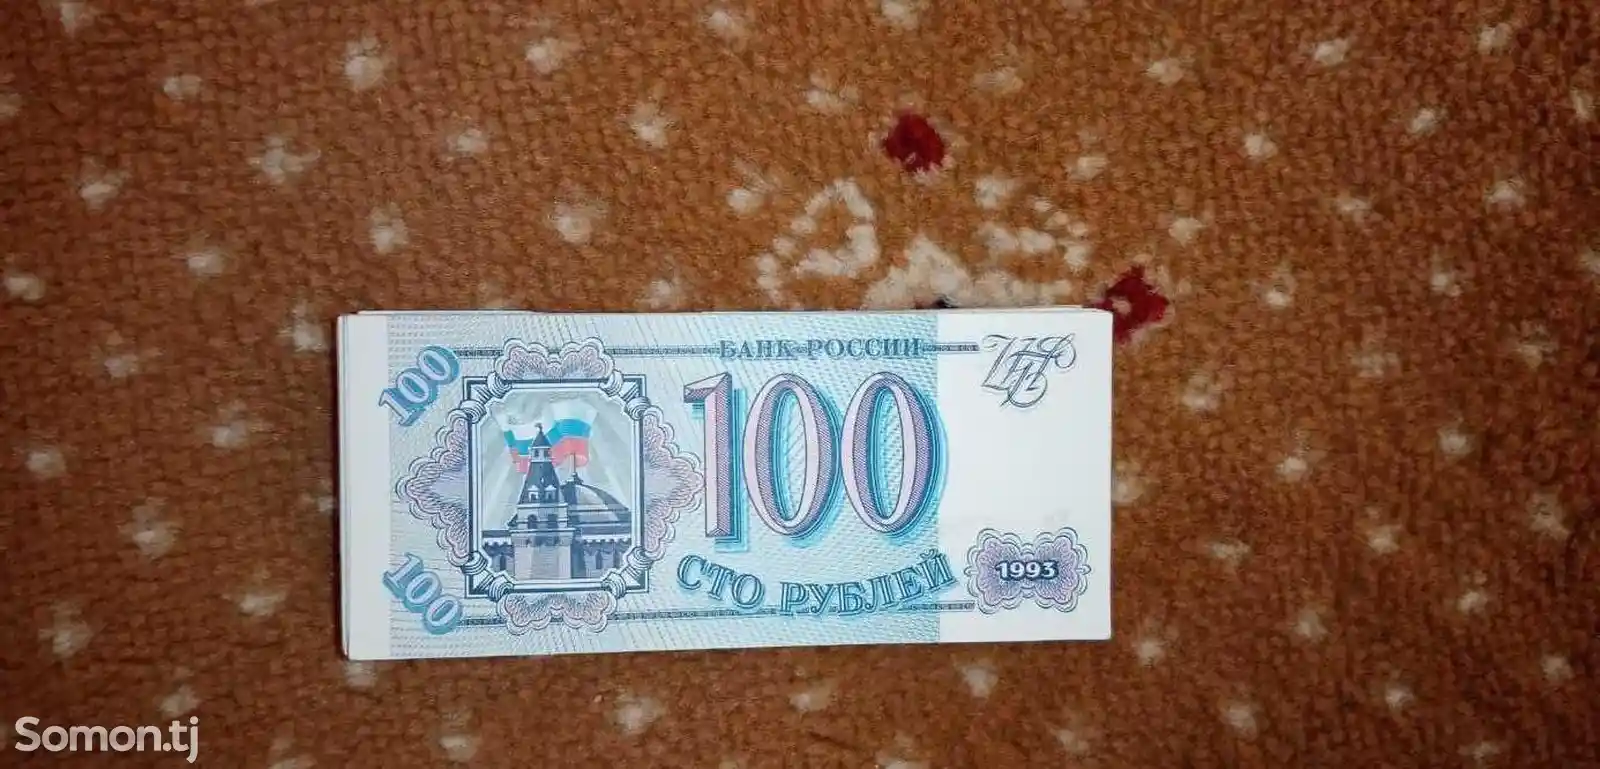 100 рубль купюра СССР-1